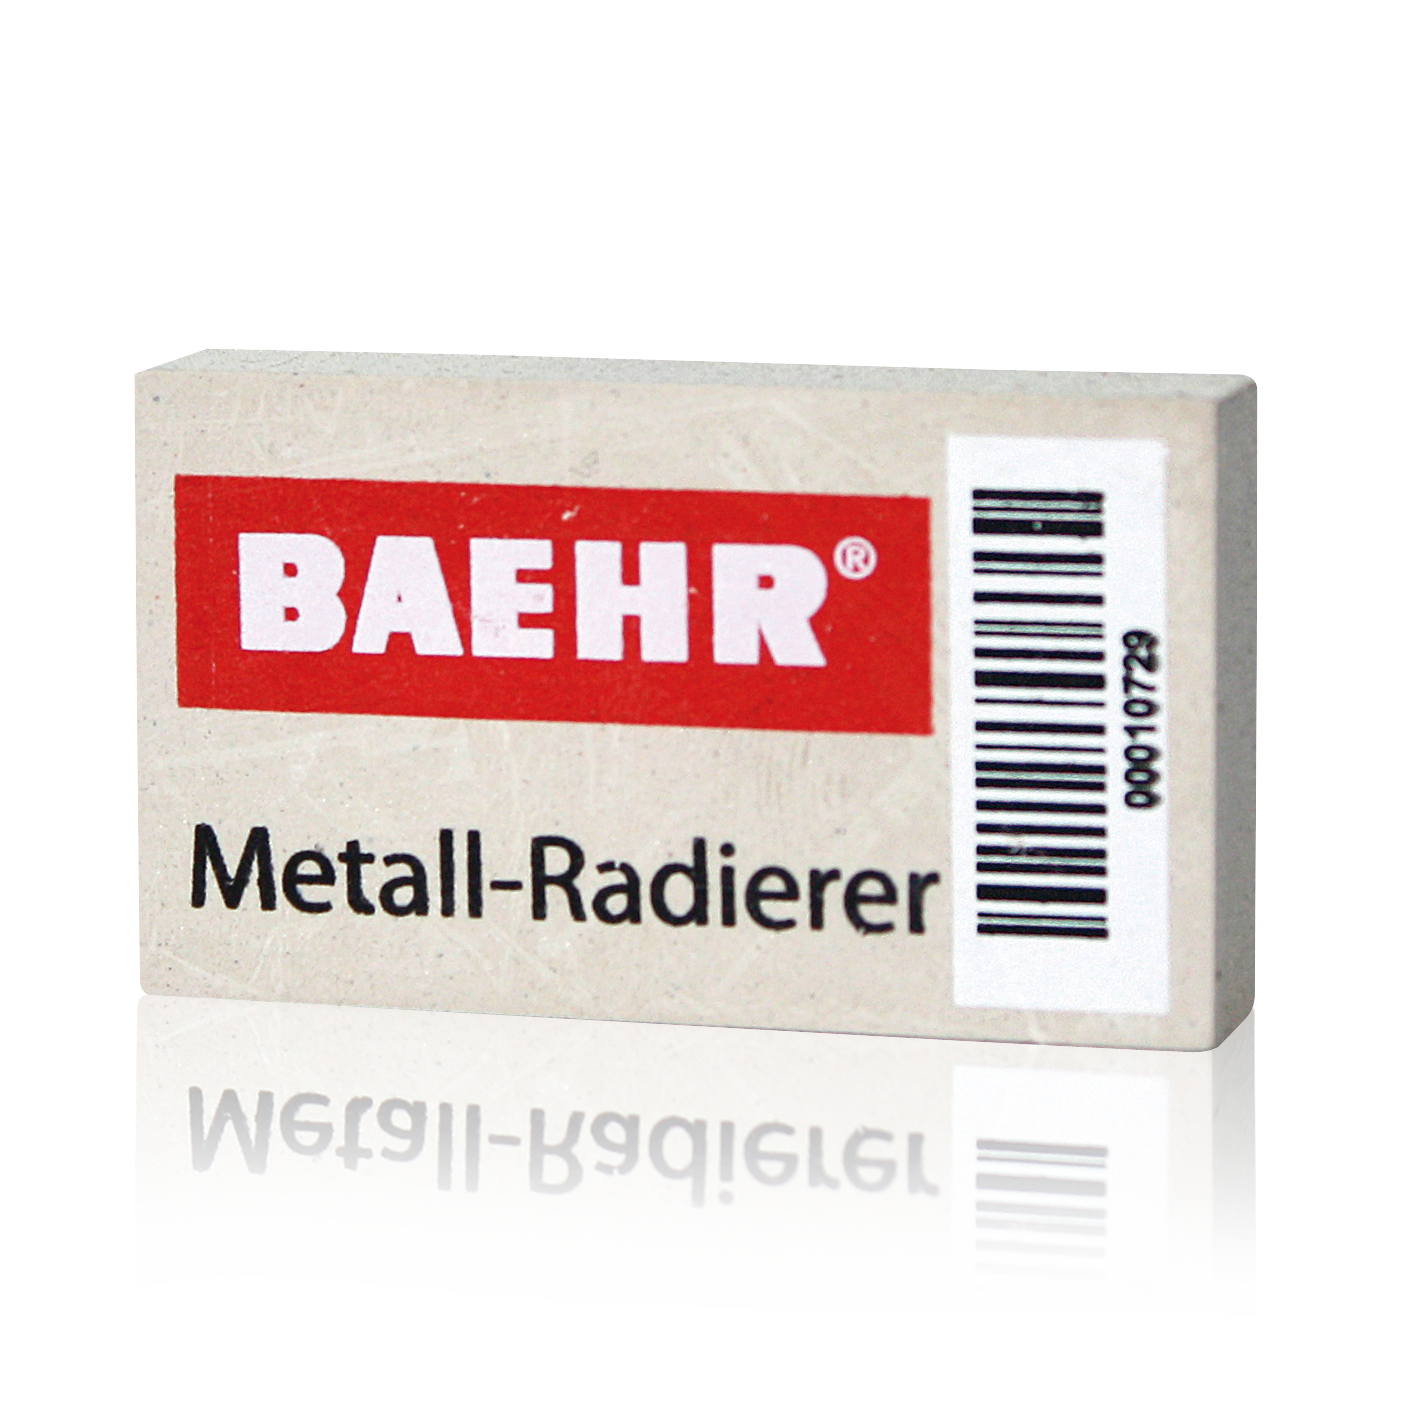 BAEHR Metall-Radierer, 5 x 2,9 x 1 cm